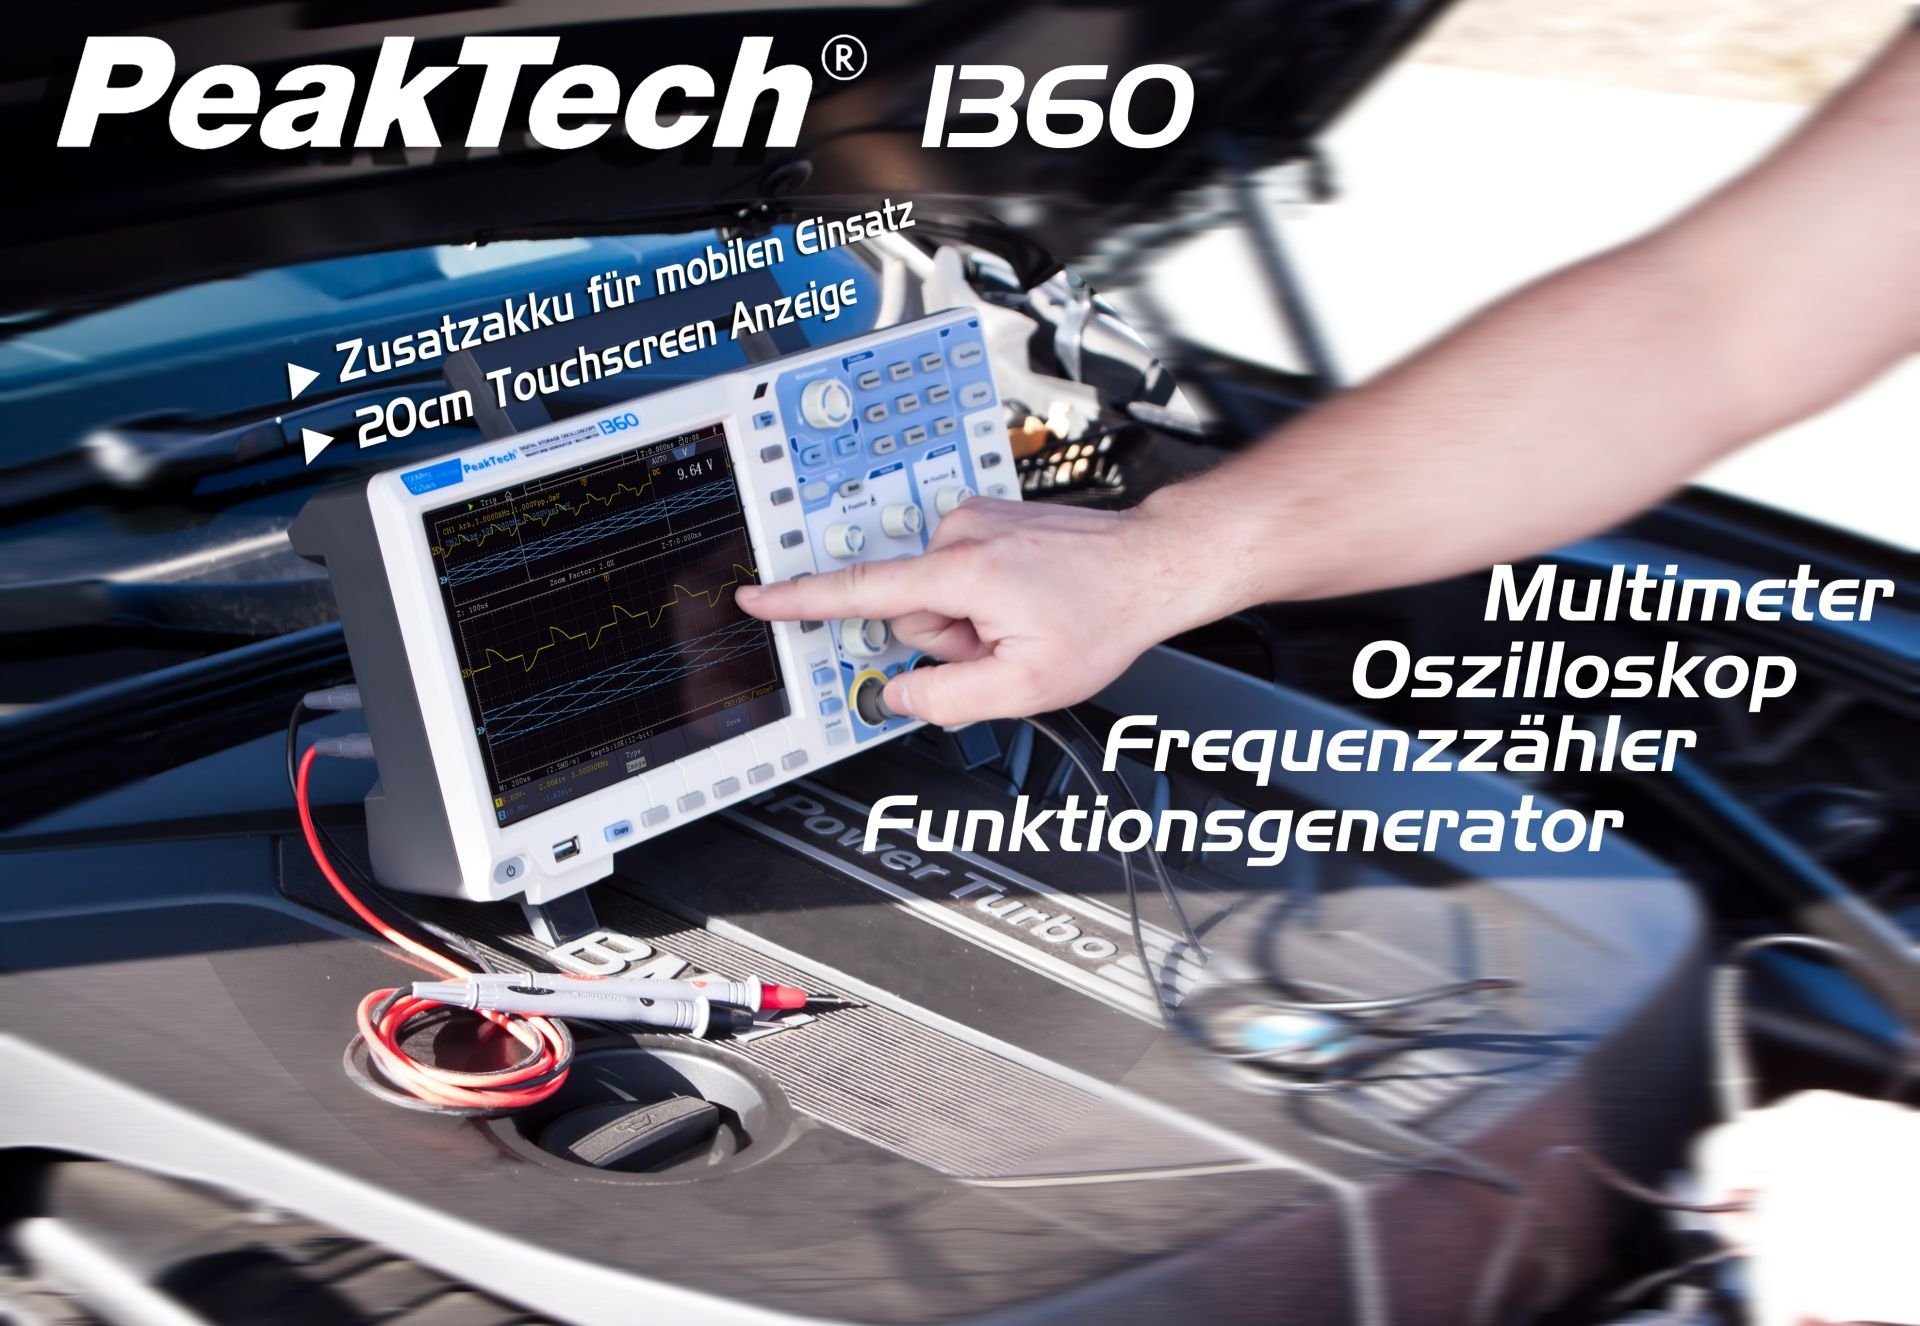 PeakTech Spannungsprüfer 1360: mit 2CH DMM MHz ~ PeakTech 1GS/s 100 & Oszilloskop Generator / 